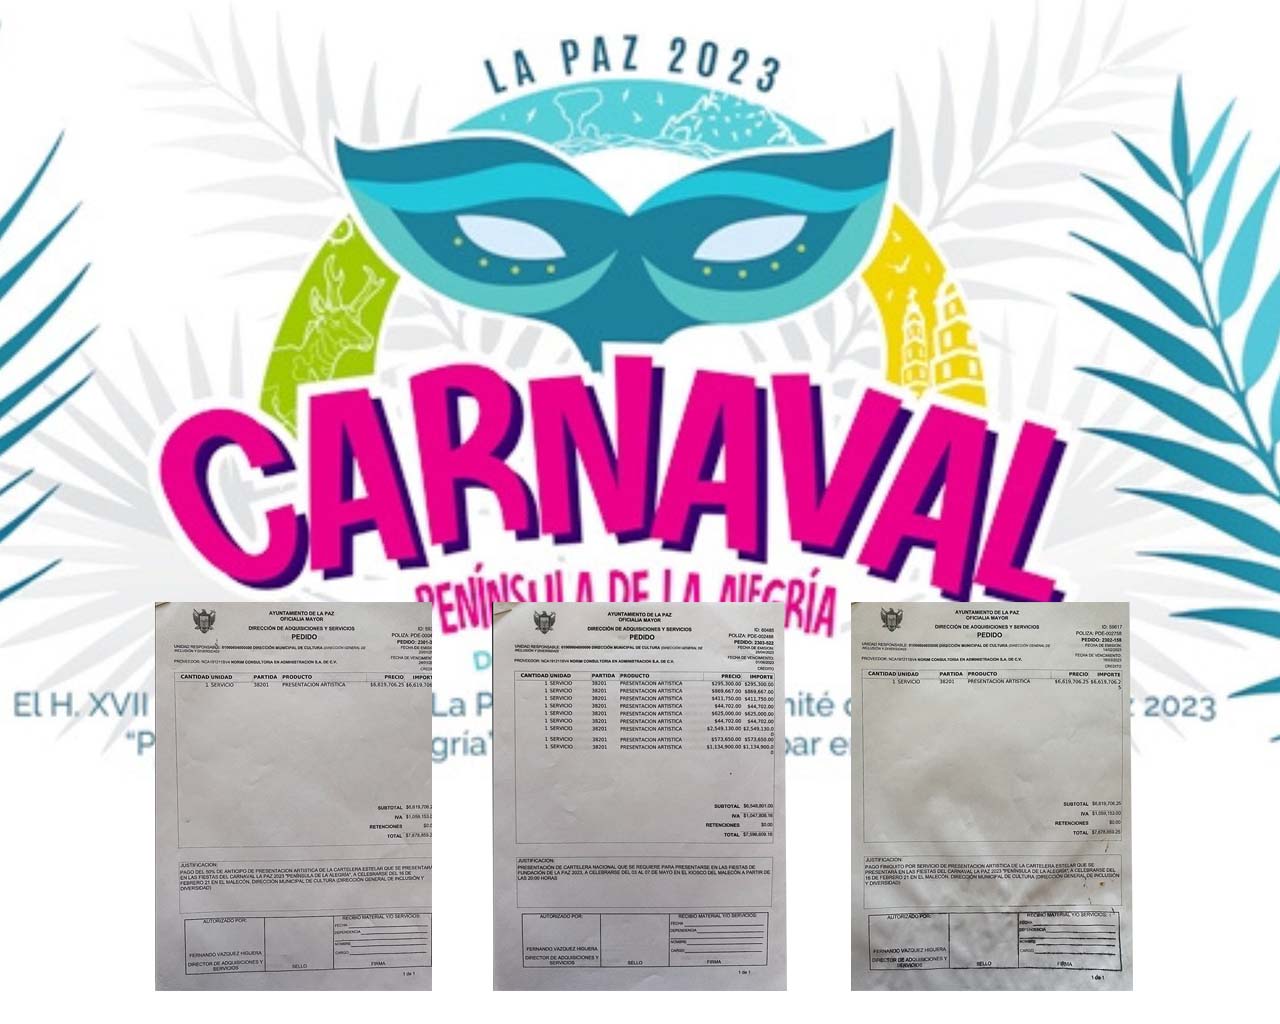 ‘Consultora Administrativa’ recibió por adjudicación directa más de 22 MDP para cartelera de Carnaval La Paz 2023.